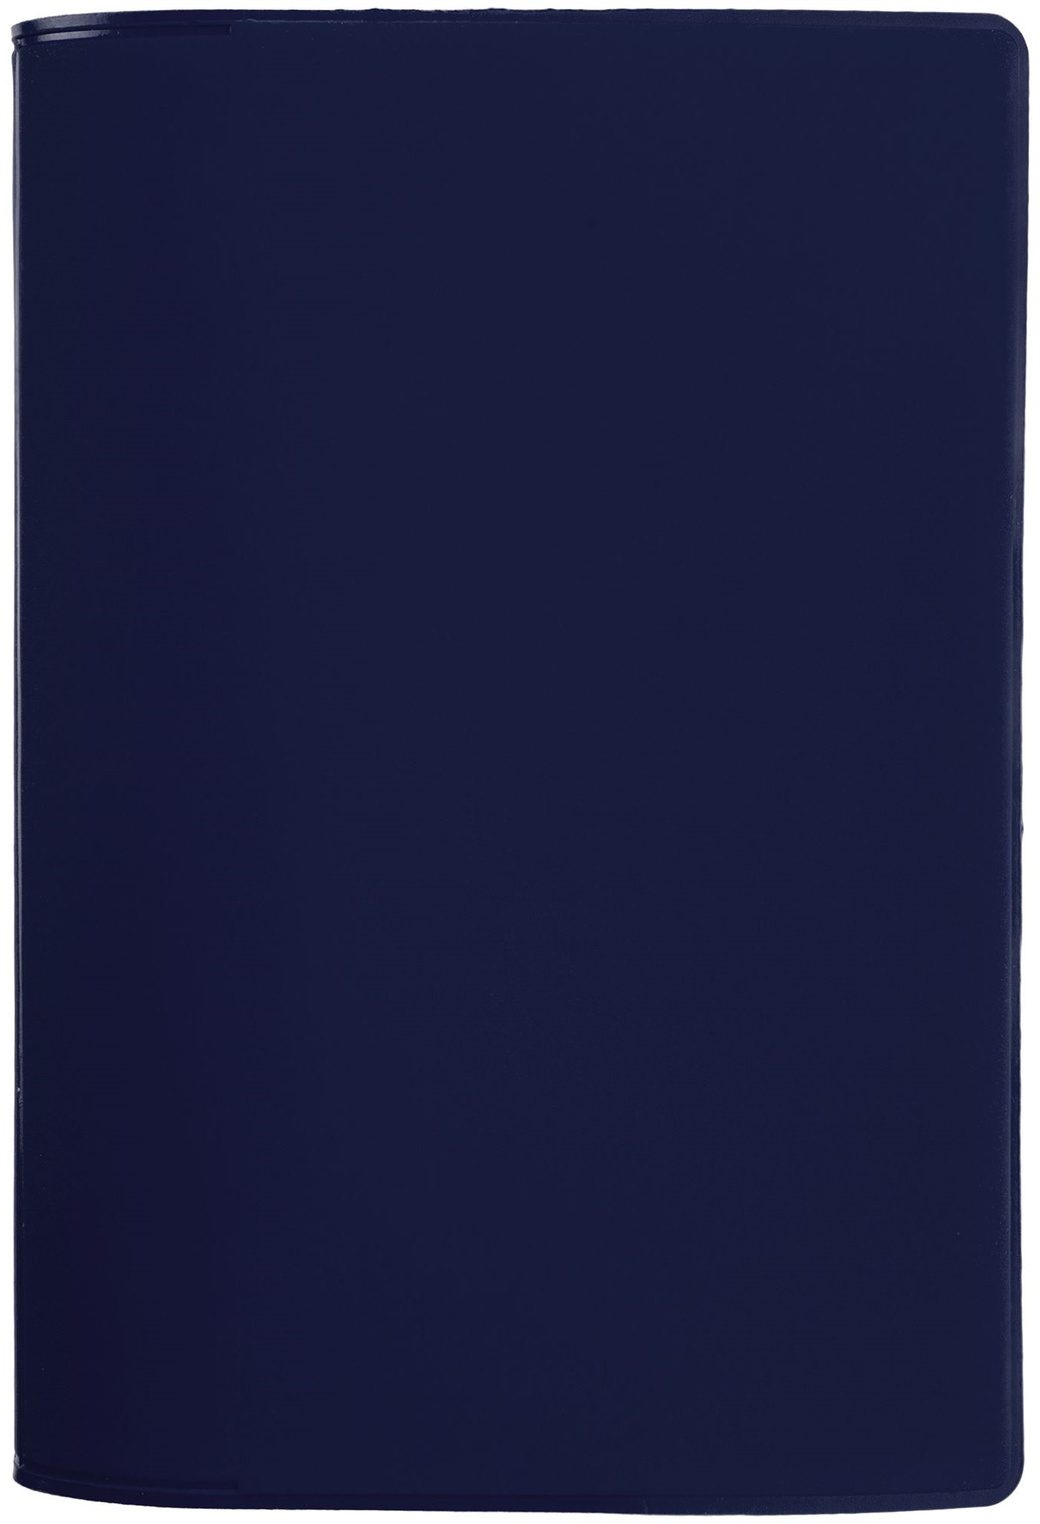 Обложка для паспорта Dorset, синяя фото